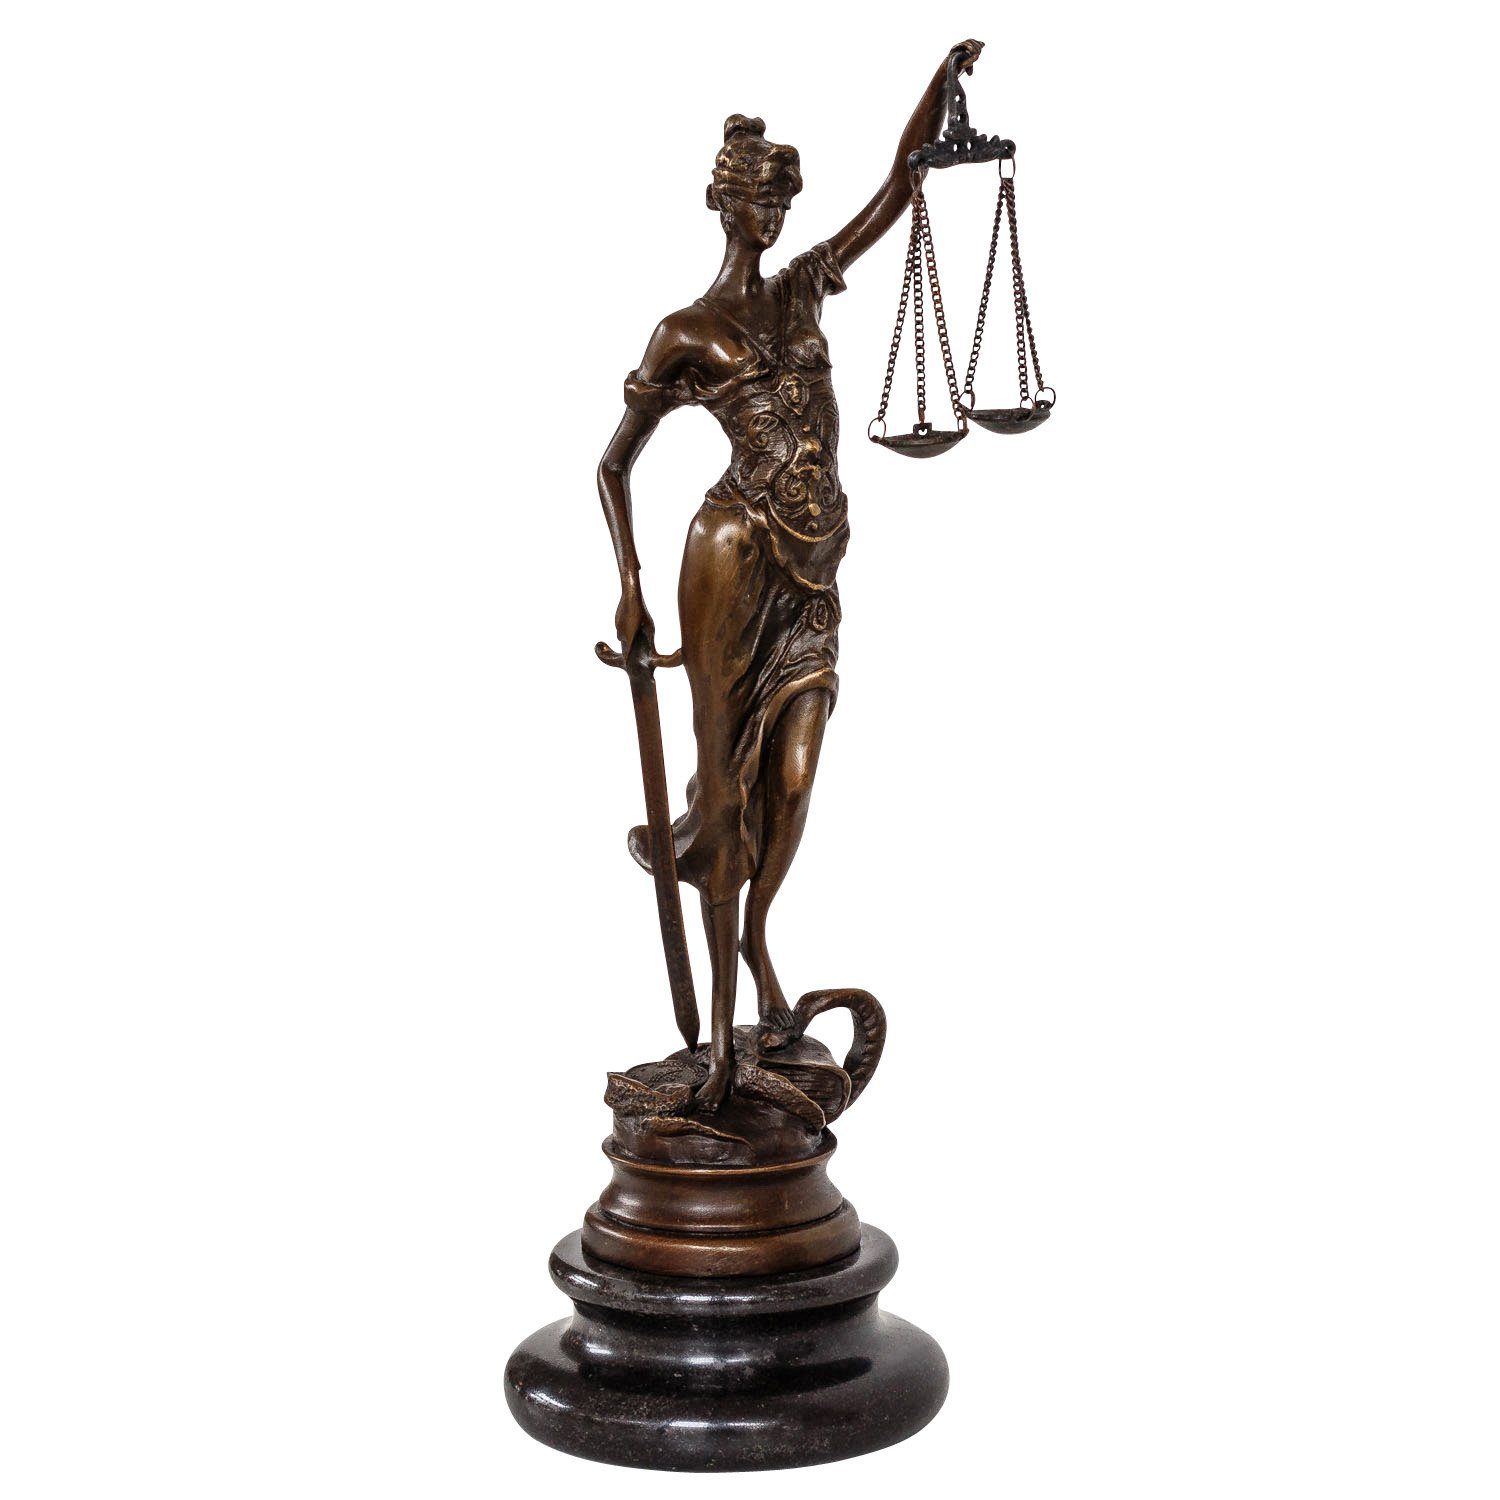 Aubaho Skulptur Bronzeskulptur Justitia Justizia Bronzefigur Bronze Figur Skulptur Ant